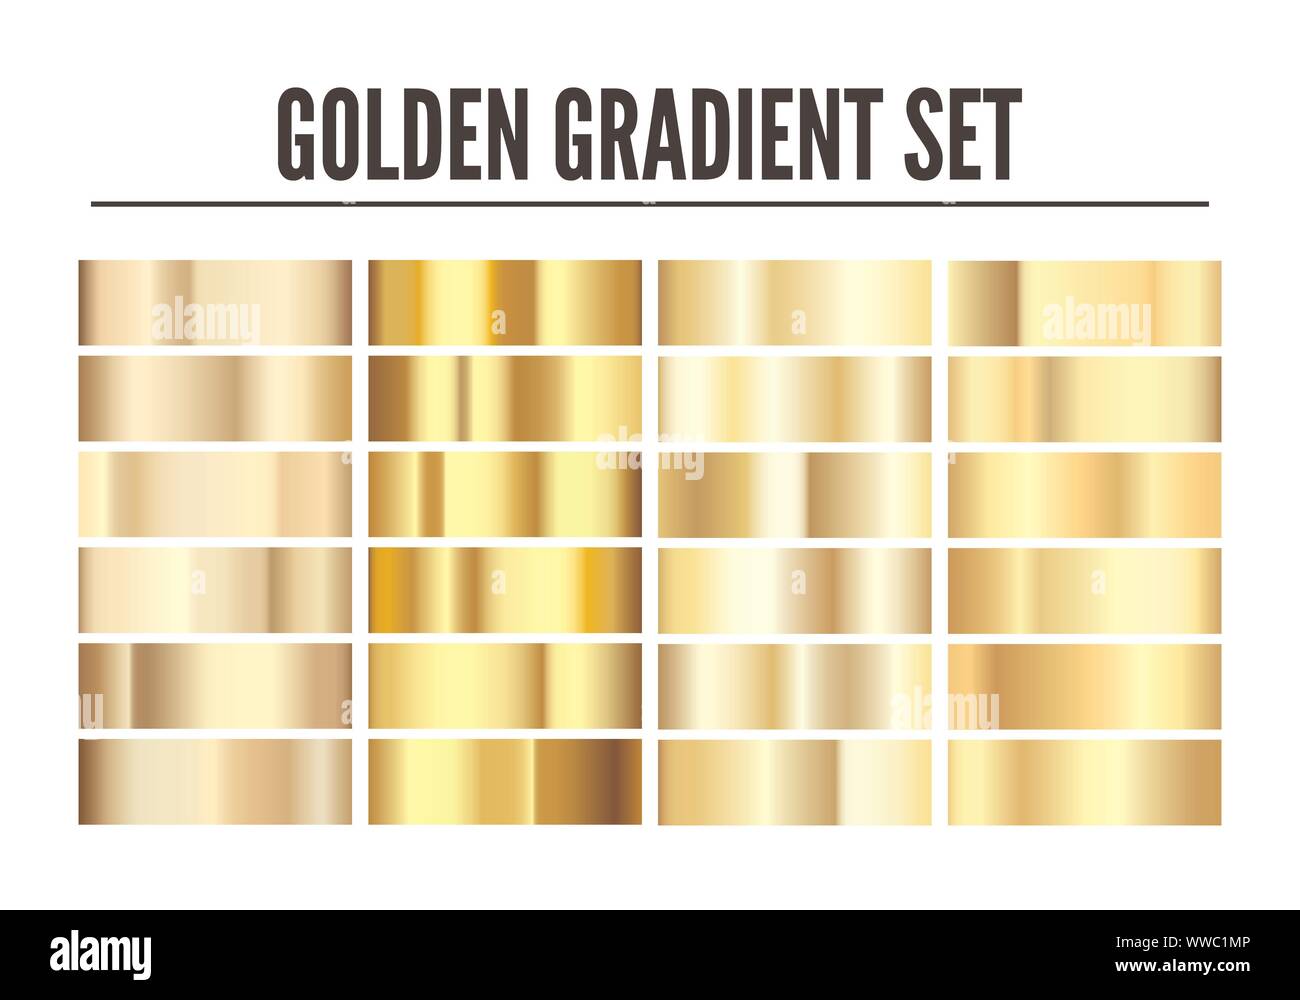 Golden gradient set: Vàng là một trong những màu sắc đẳng cấp và sang trọng nhất. Nếu bạn muốn thể hiện tính chuyên nghiệp và quyền lực cho website của mình, hãy tận dụng Golden Gradient Set. Với những tone màu gradient vàng rực rỡ, bạn sẽ có một website thật ấn tượng.